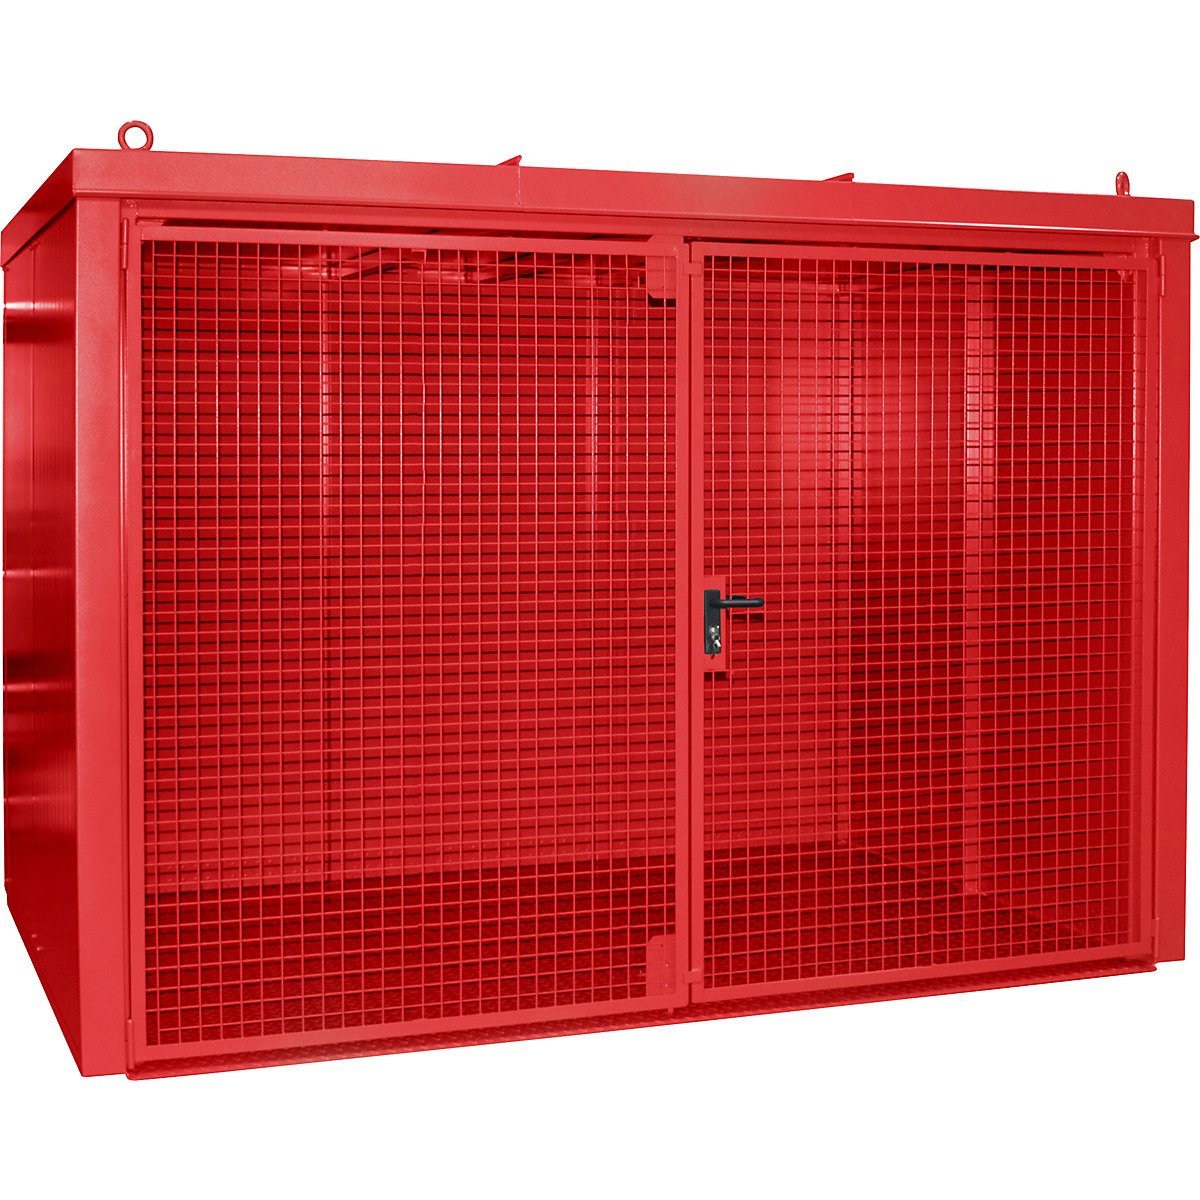 Container per bombole di gas, antincendio – eurokraft pro